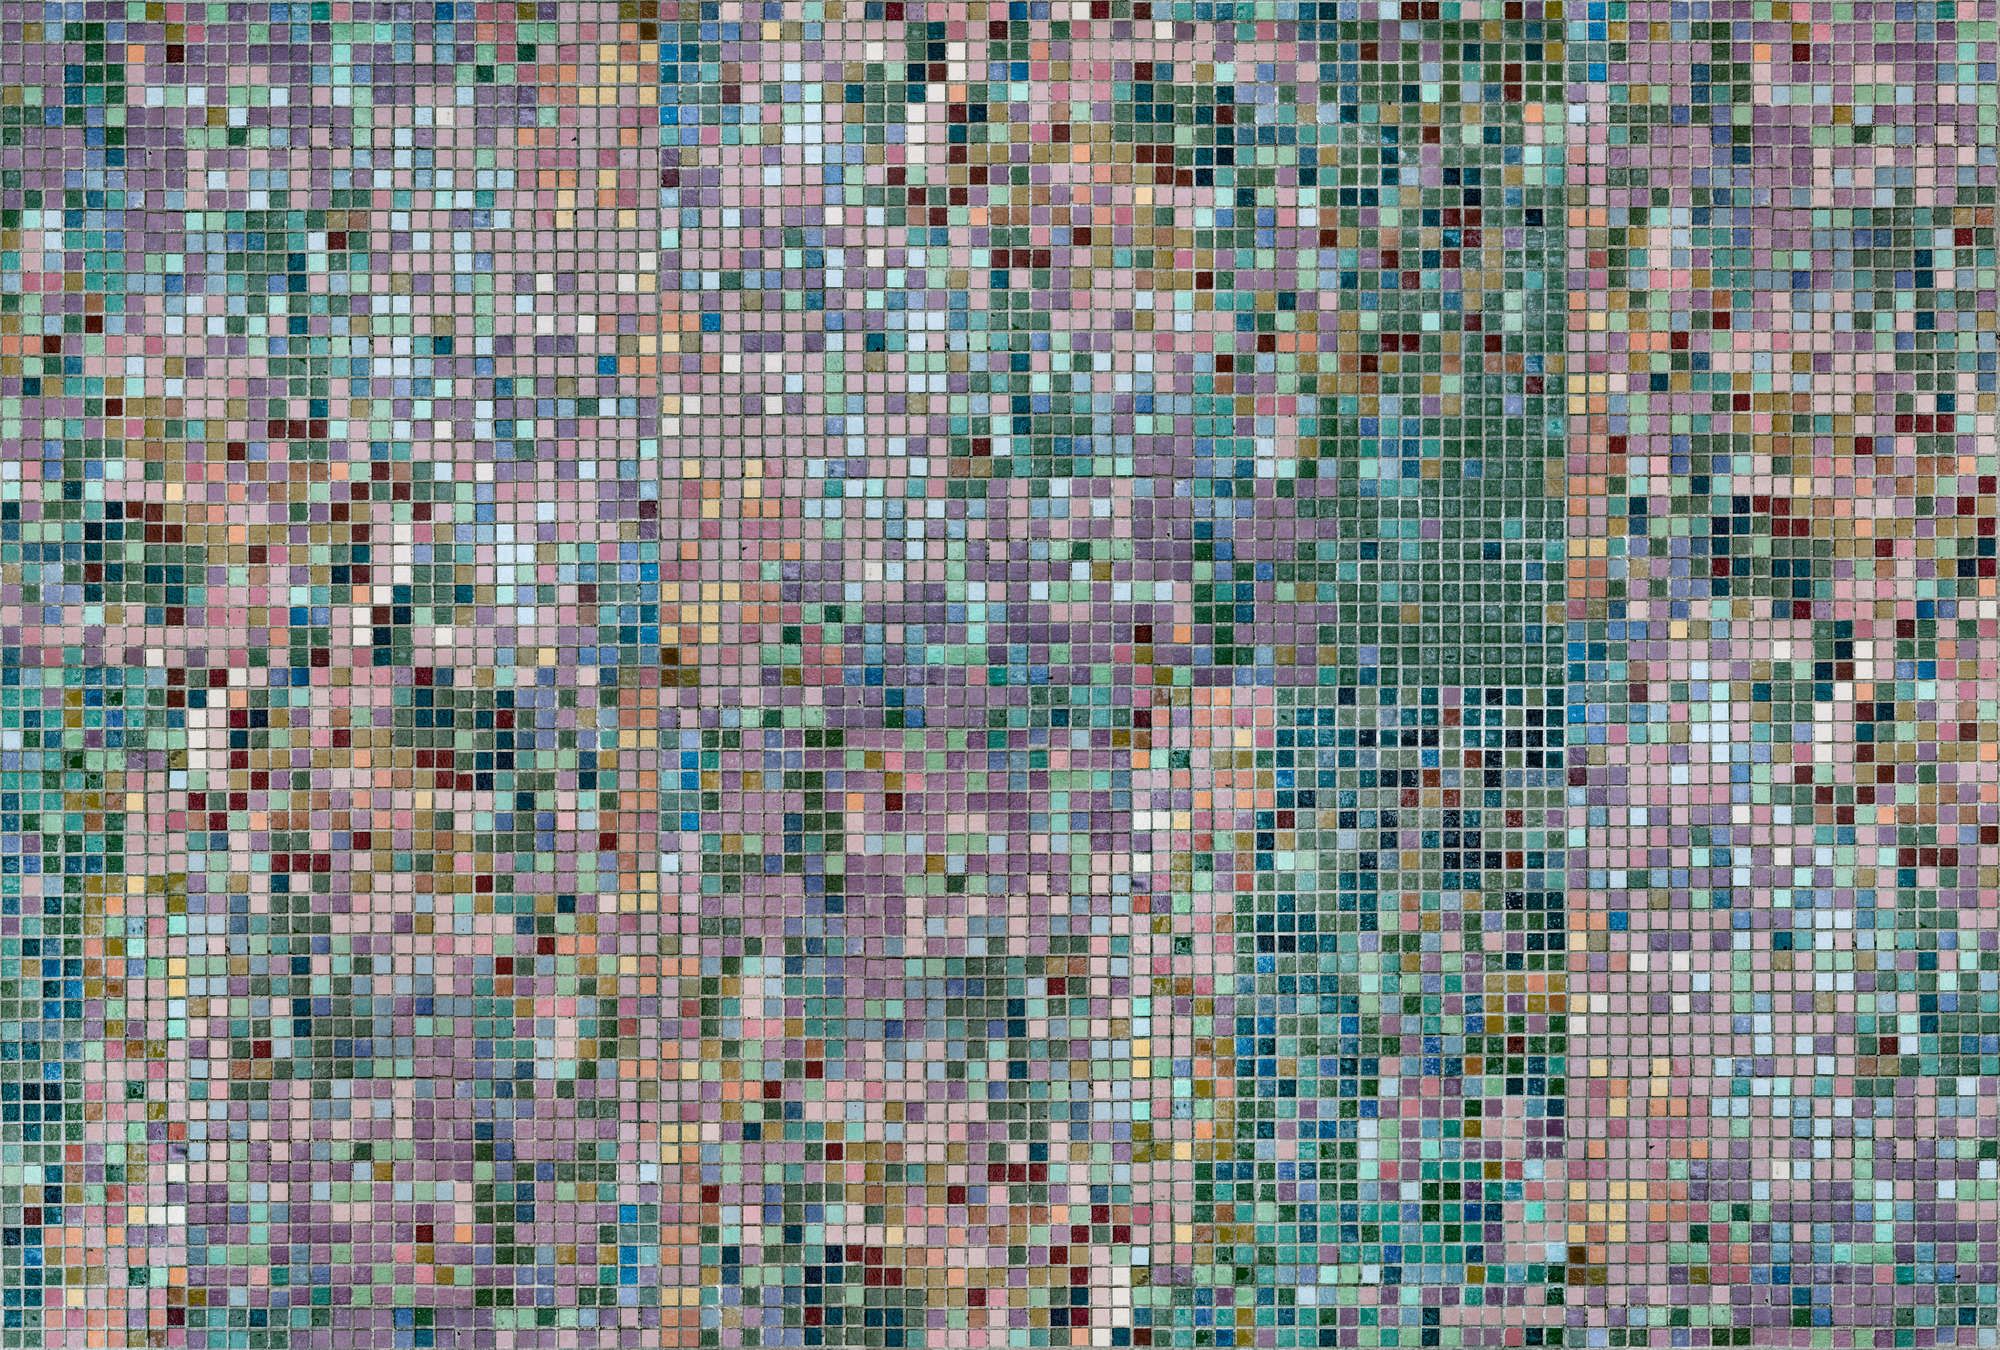             Fotomurali »grand central« - Motivo a mosaico in colori vivaci - Materiali non tessuto leggermente strutturato
        